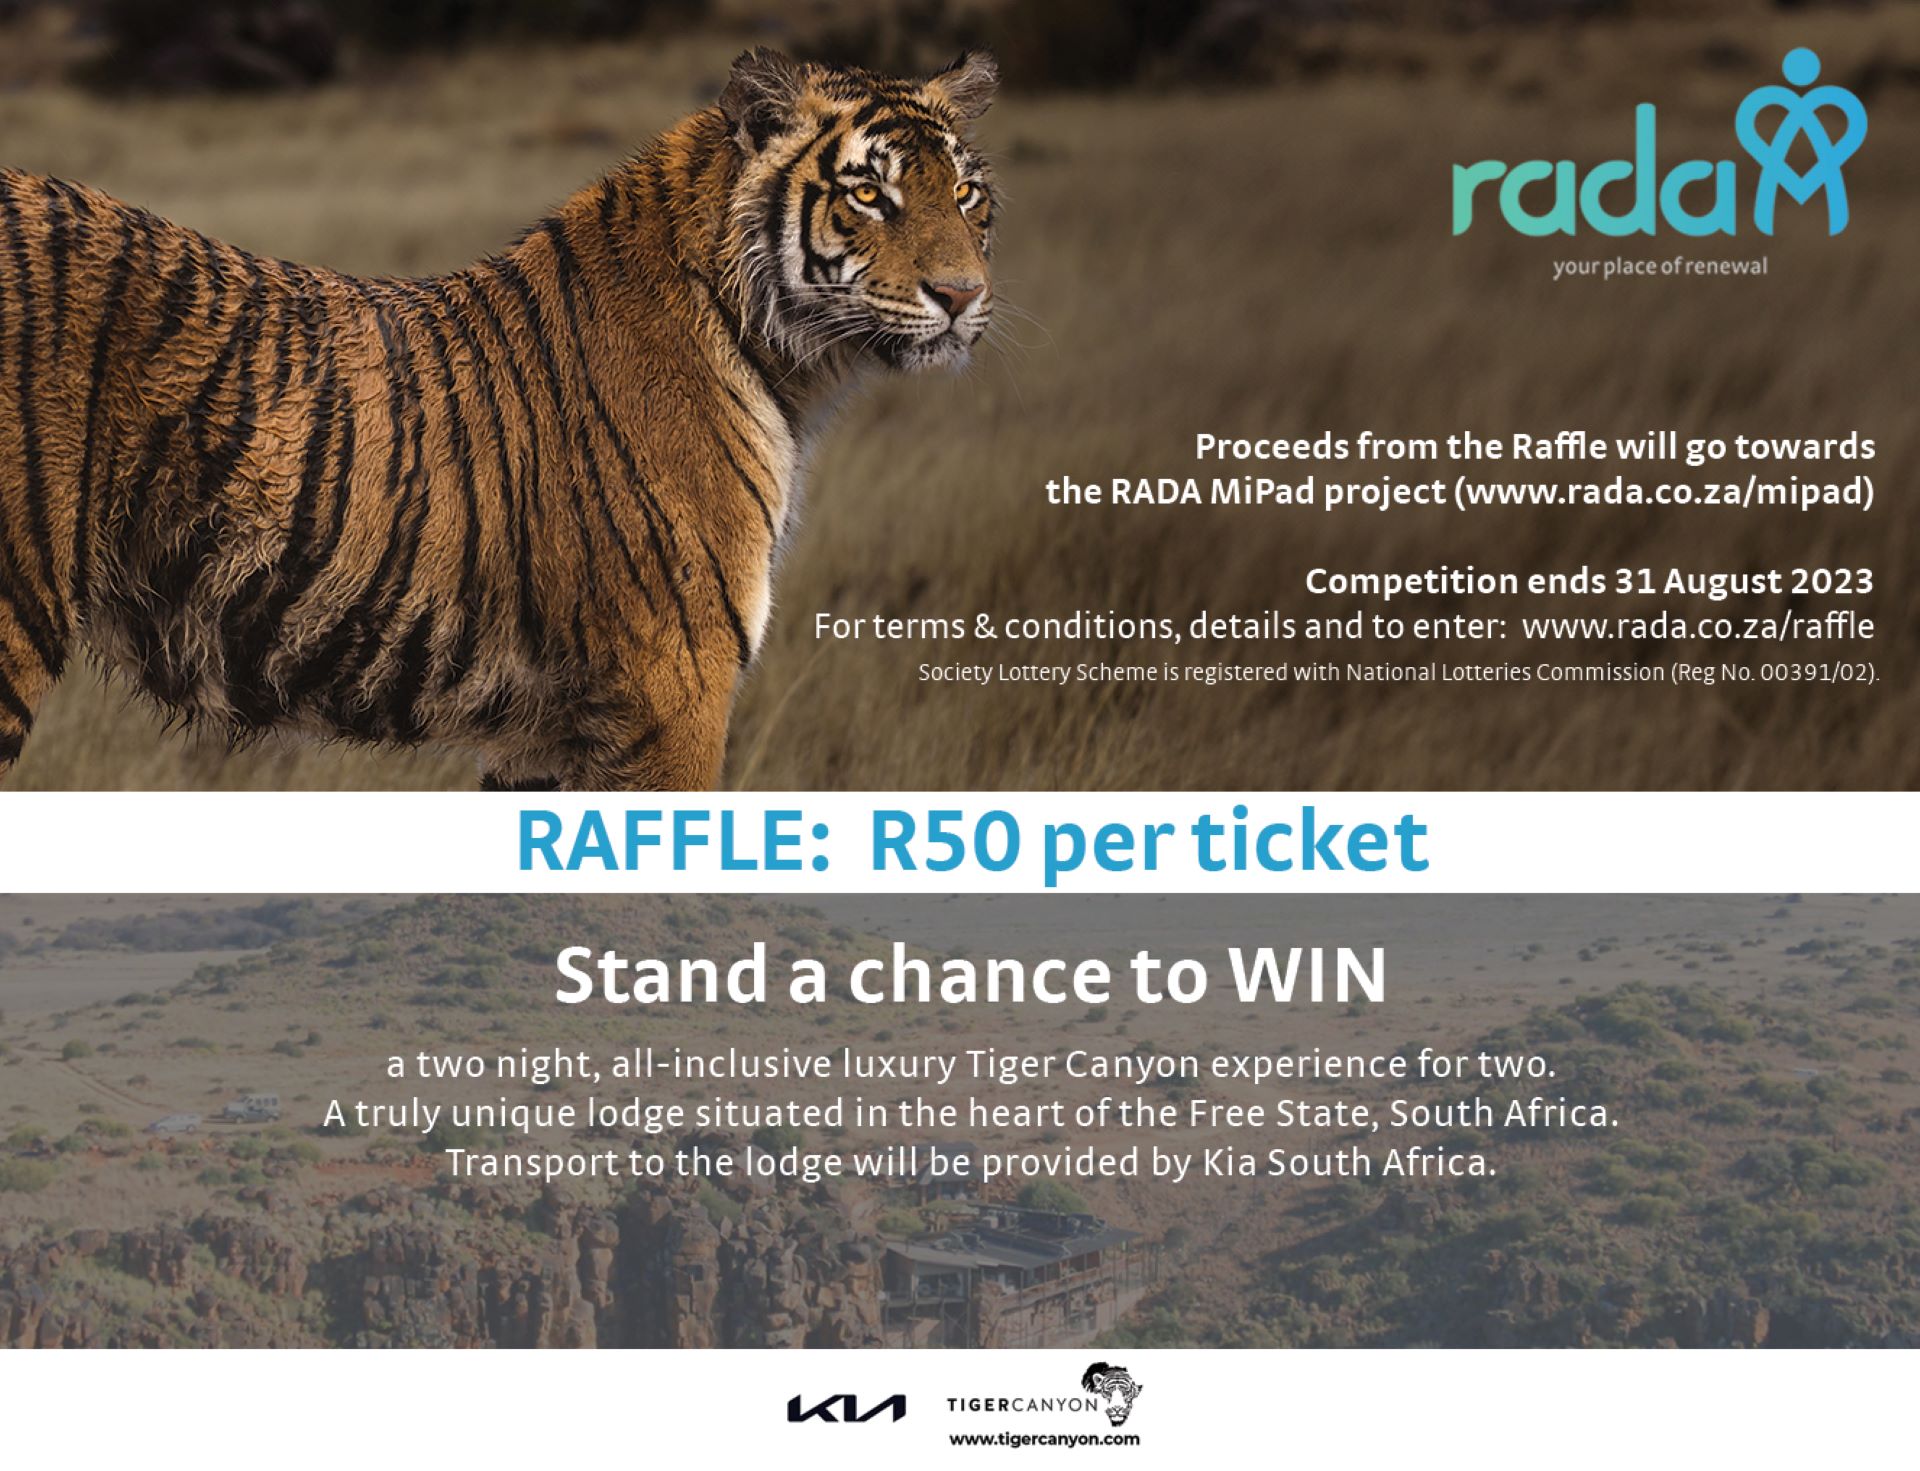 Kia donates R70,000 towards the RADA MiPad project